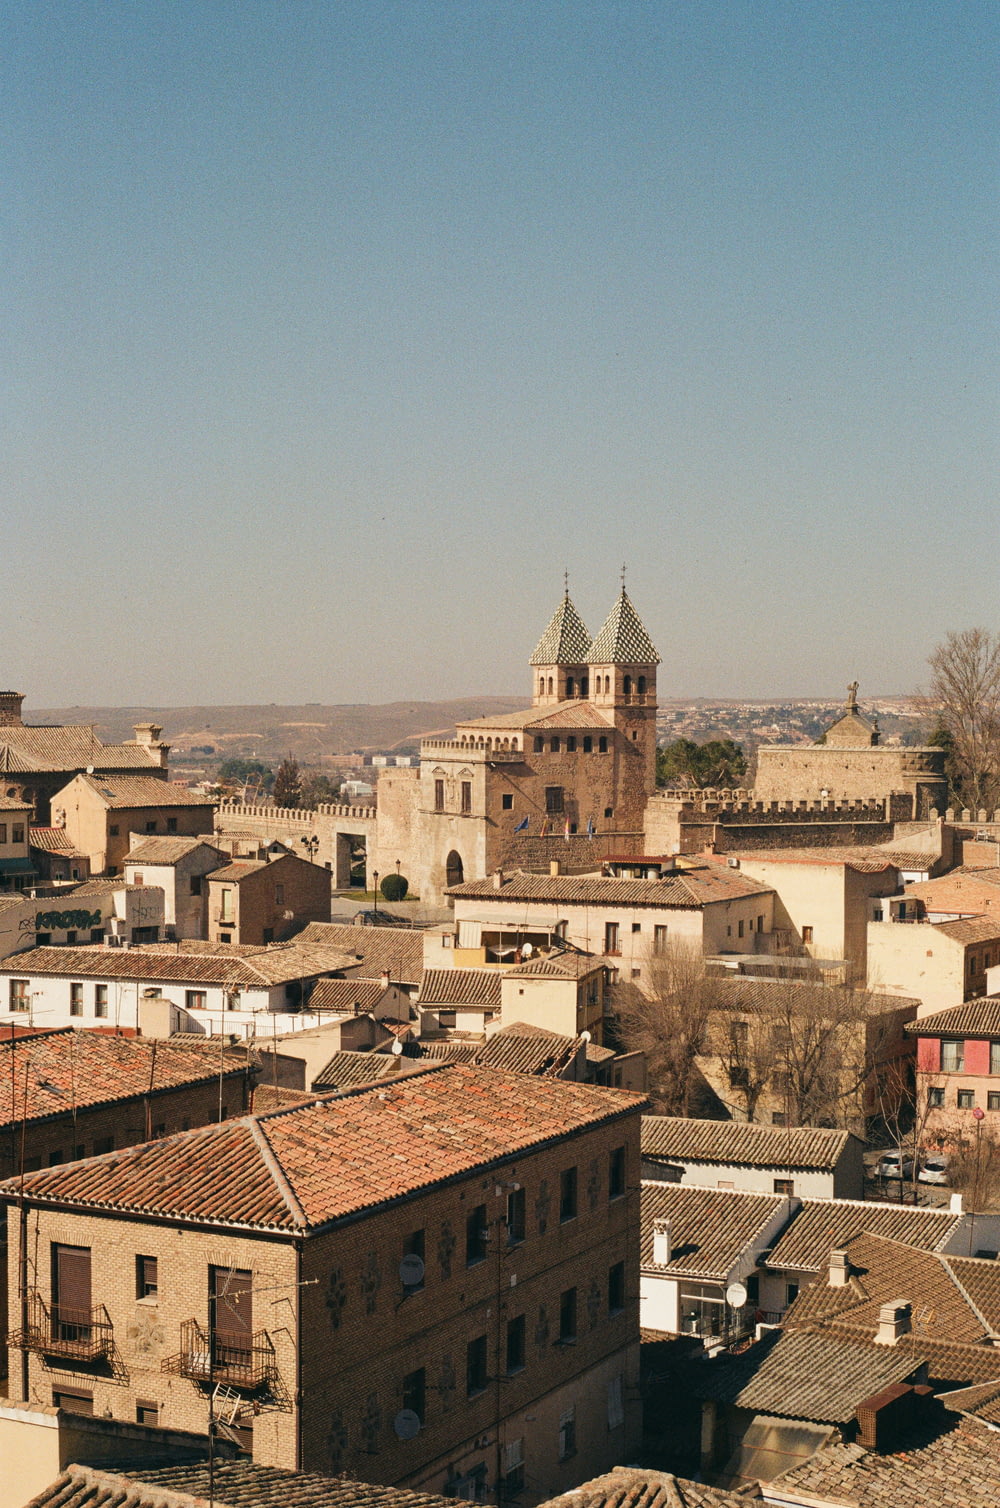 uma vista de uma cidade com uma torre do relógio